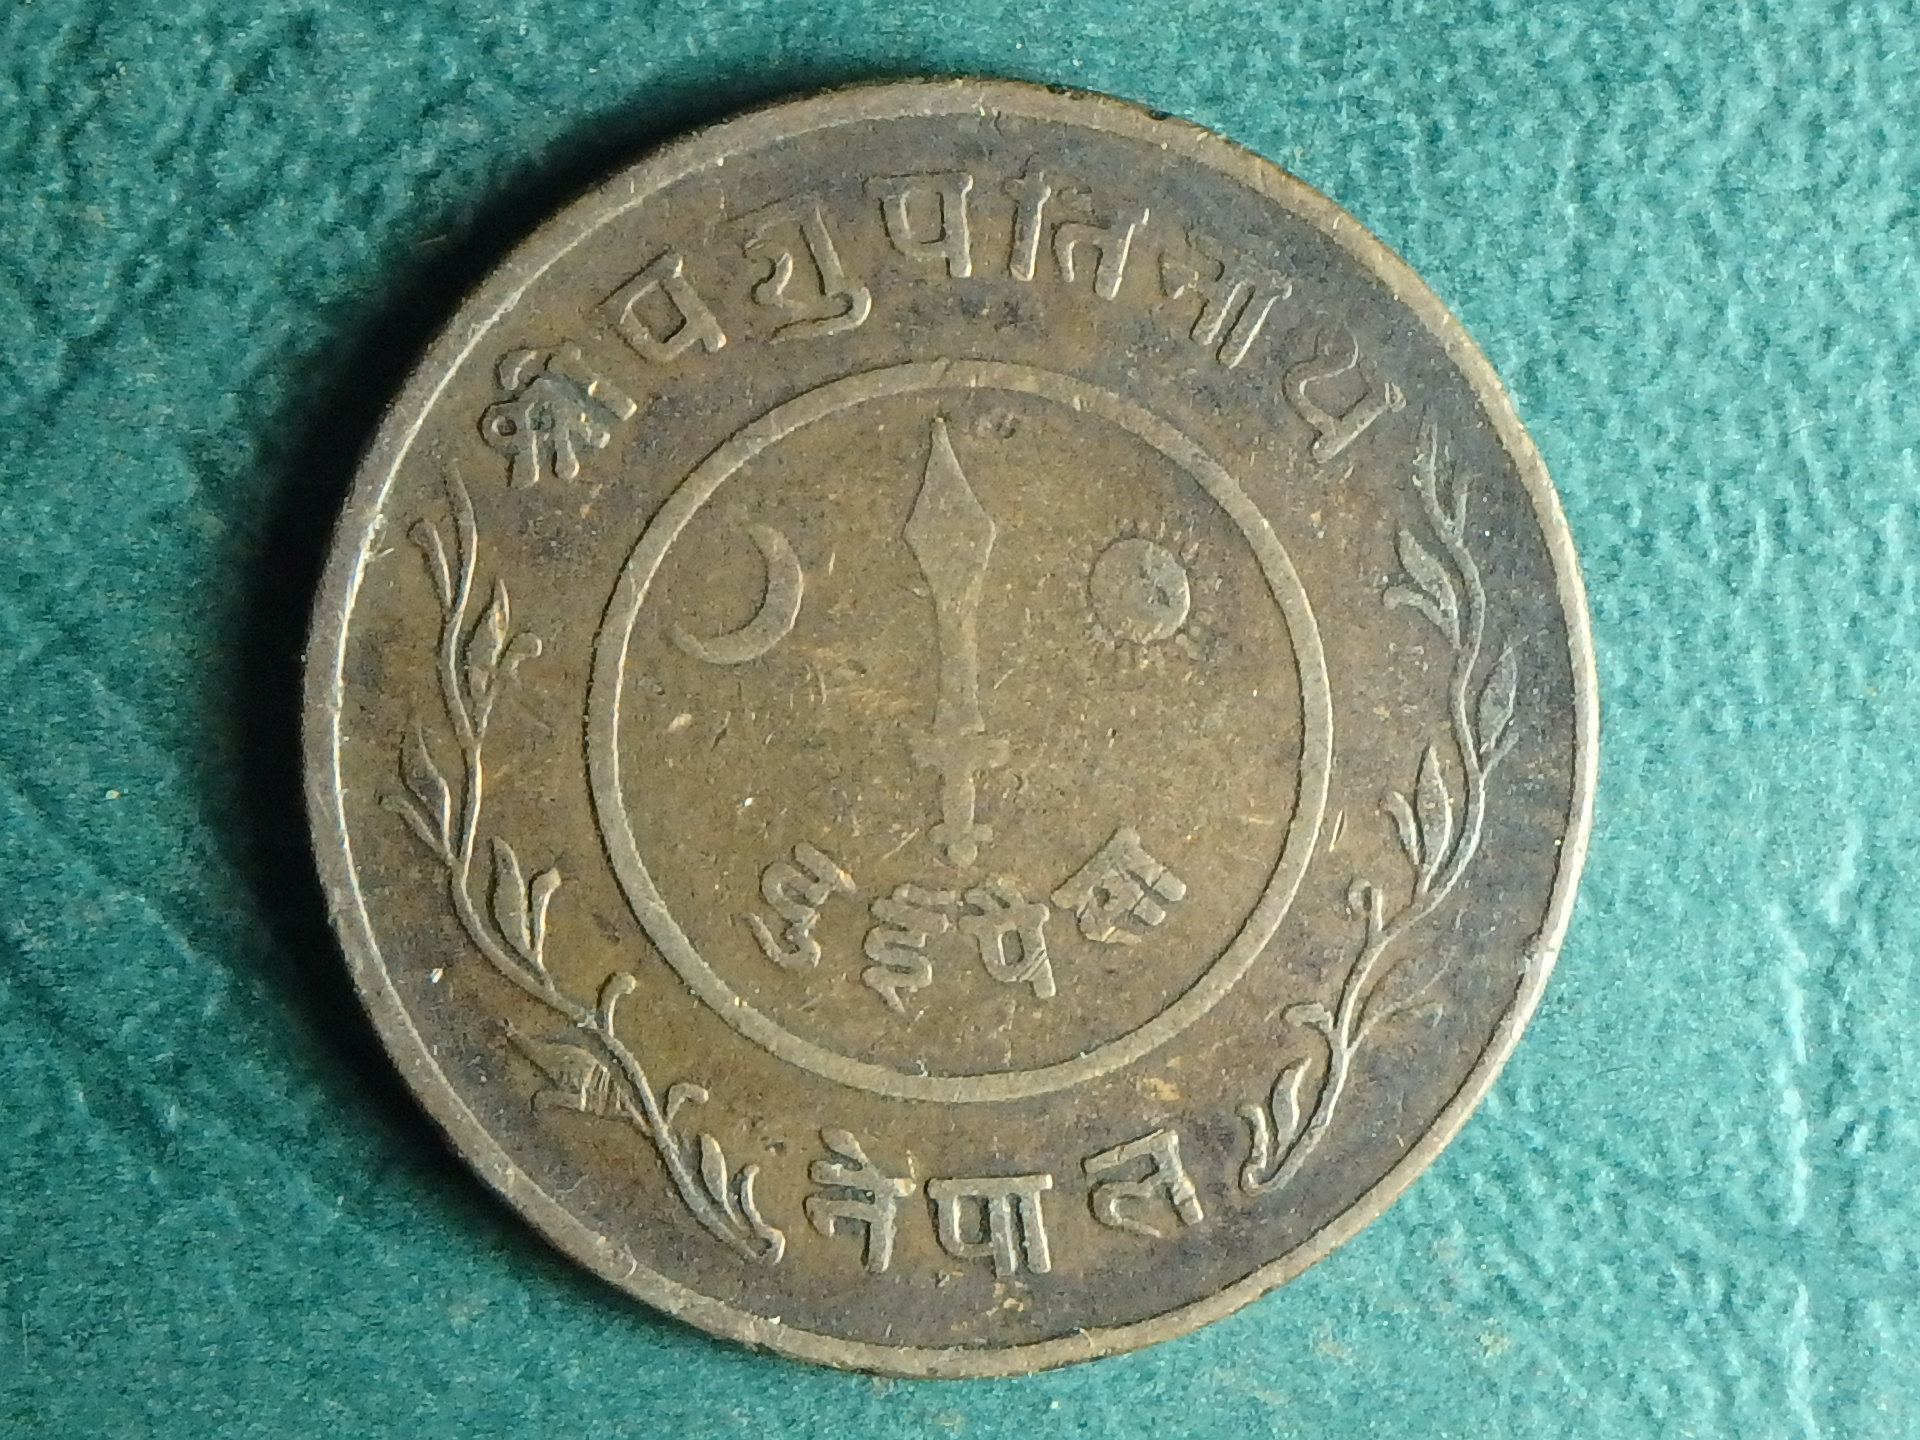 1941 Nepal 2 p obv.JPG